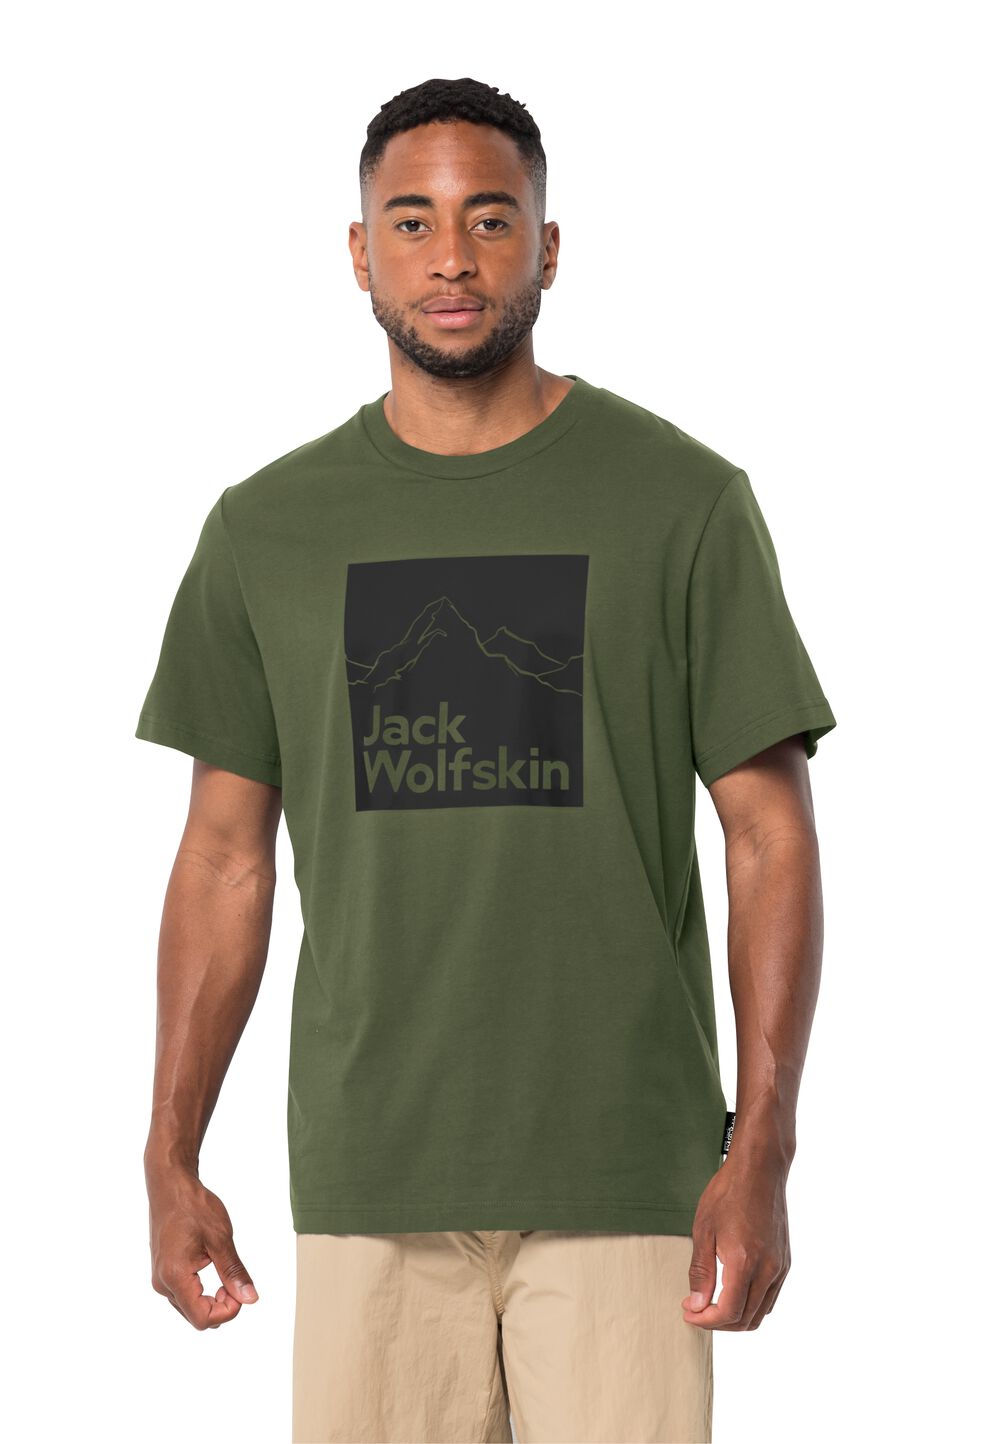 Jack Wolfskin Herren T-shirt aus Bio-Baumwolle Brand T-Shirt Men L greenwood greenwood von Jack Wolfskin